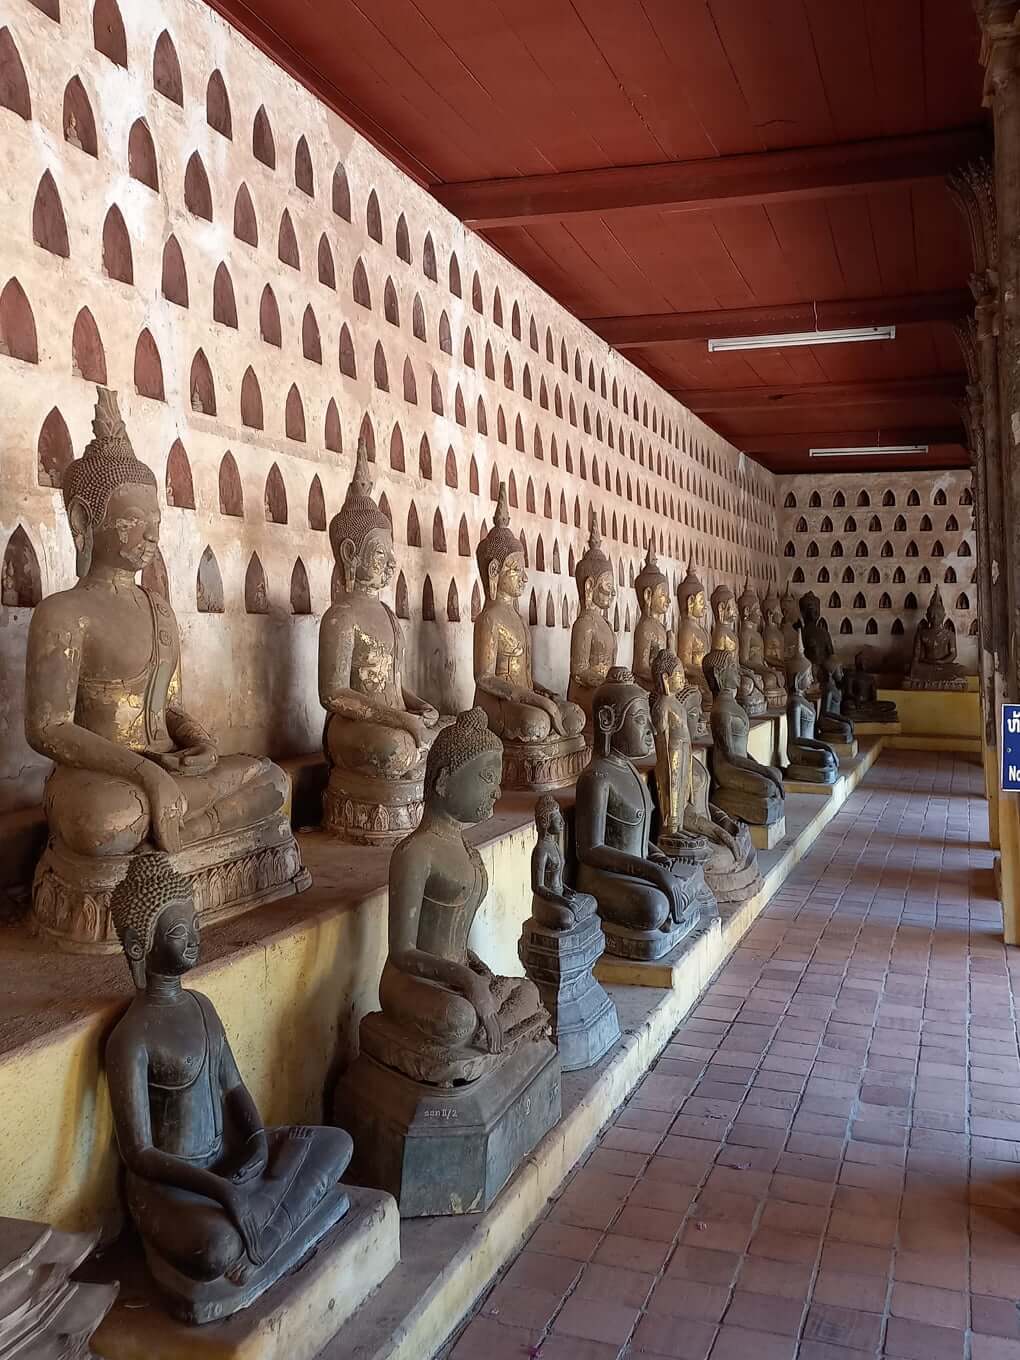 Authentic-Laos-Tour-9-Days-Sisaket-Museum-Vientiane-1.jpg